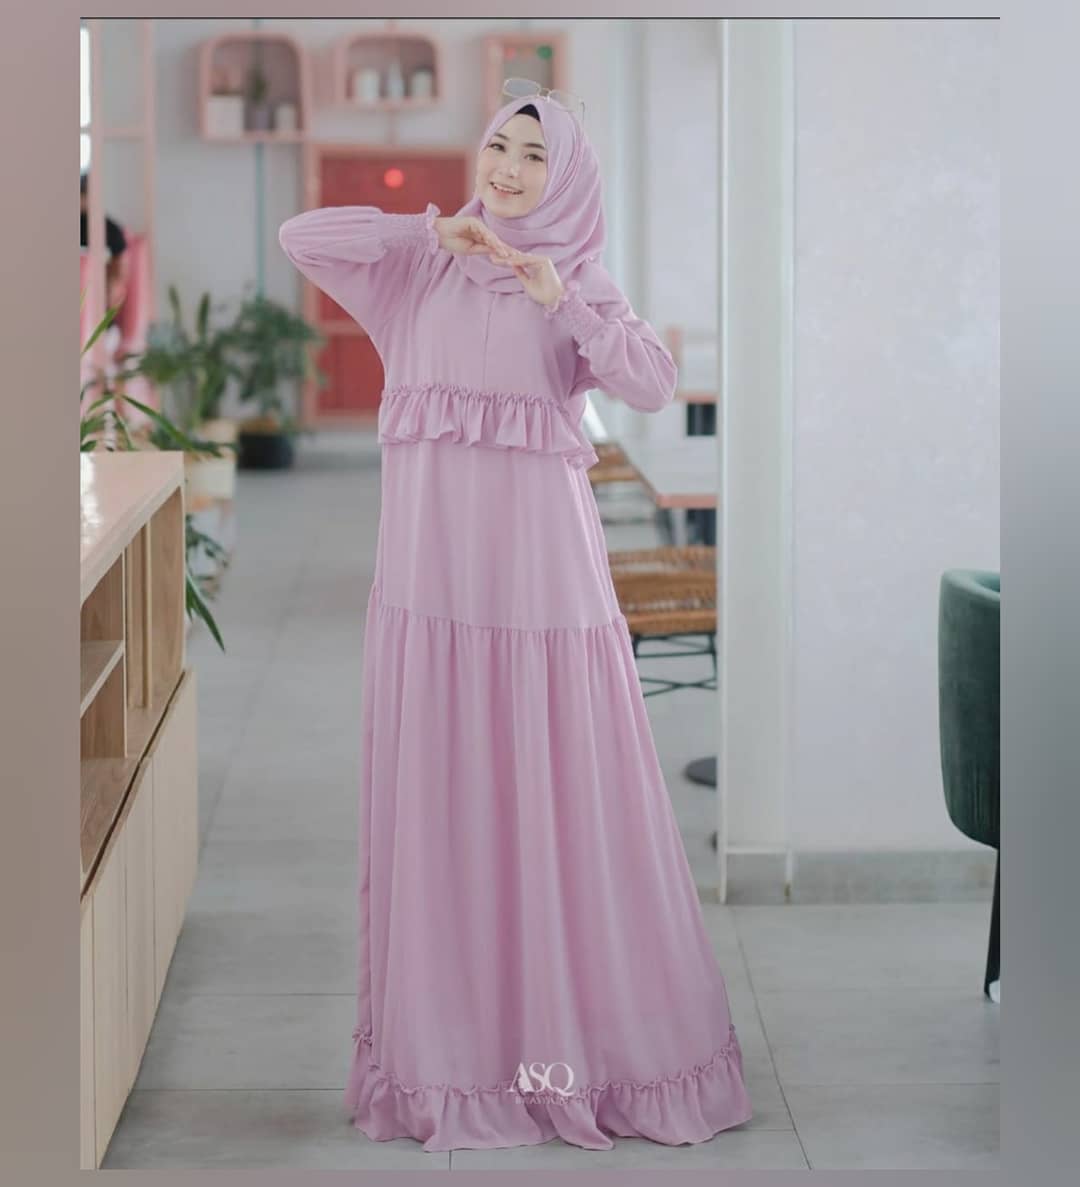 Baju Muslim Modern ISYANA DRESS KF Bahan CERUTY BABYDOLL FULL PURING Baju Gamis Remaja Baju Gamis Jumbo Gamis Kondangan Gamis Terbaru 2021 Modern BEST SELLER